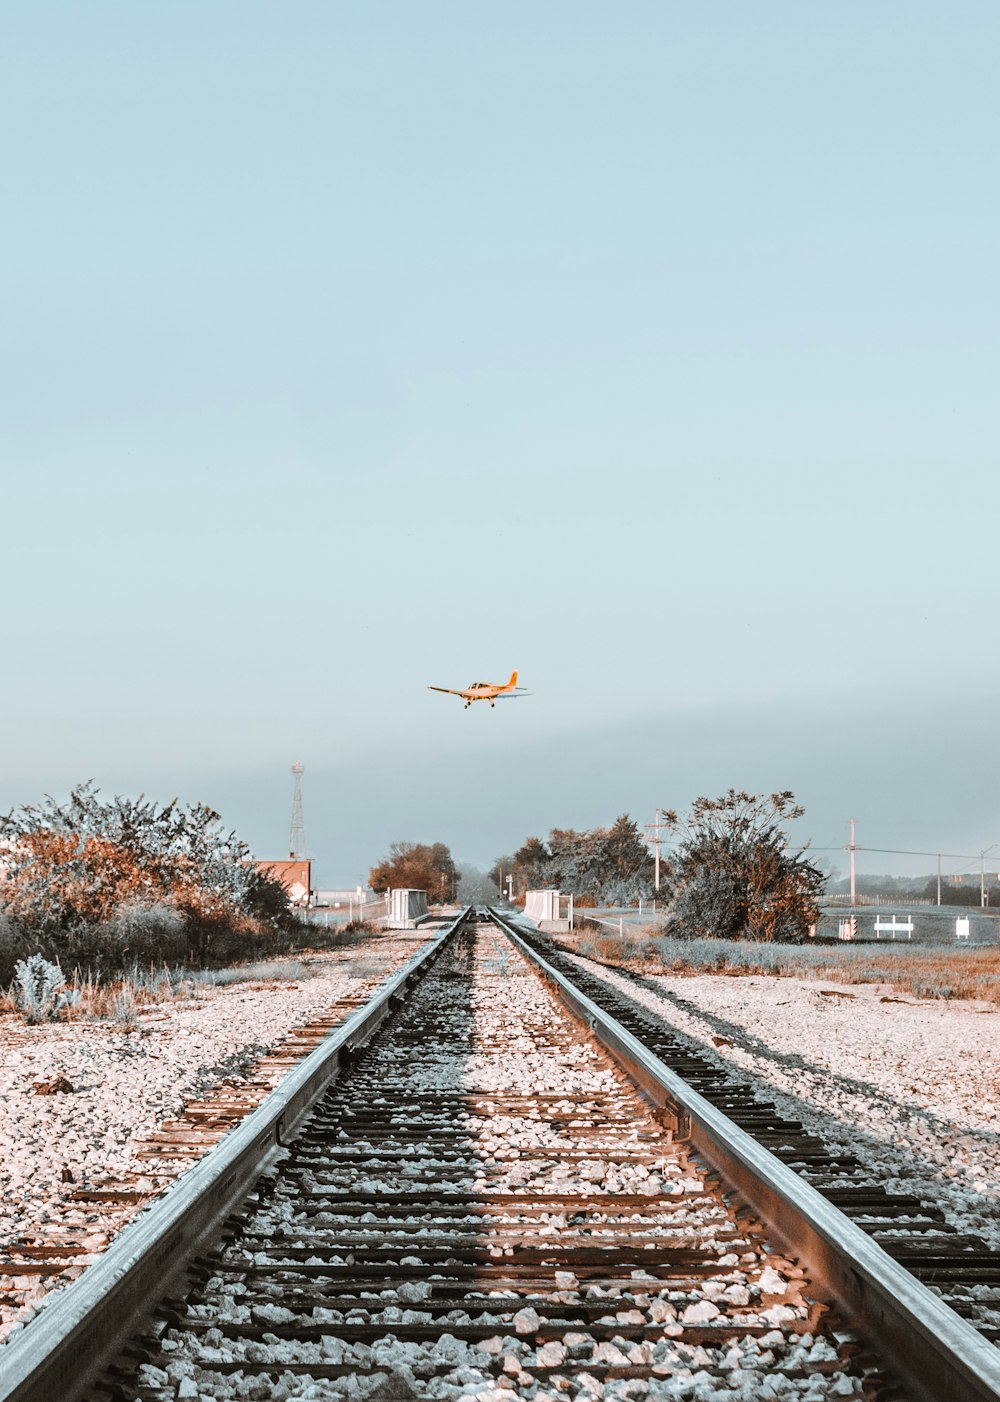 철도 위를 날고 있는 주황색 단엽기